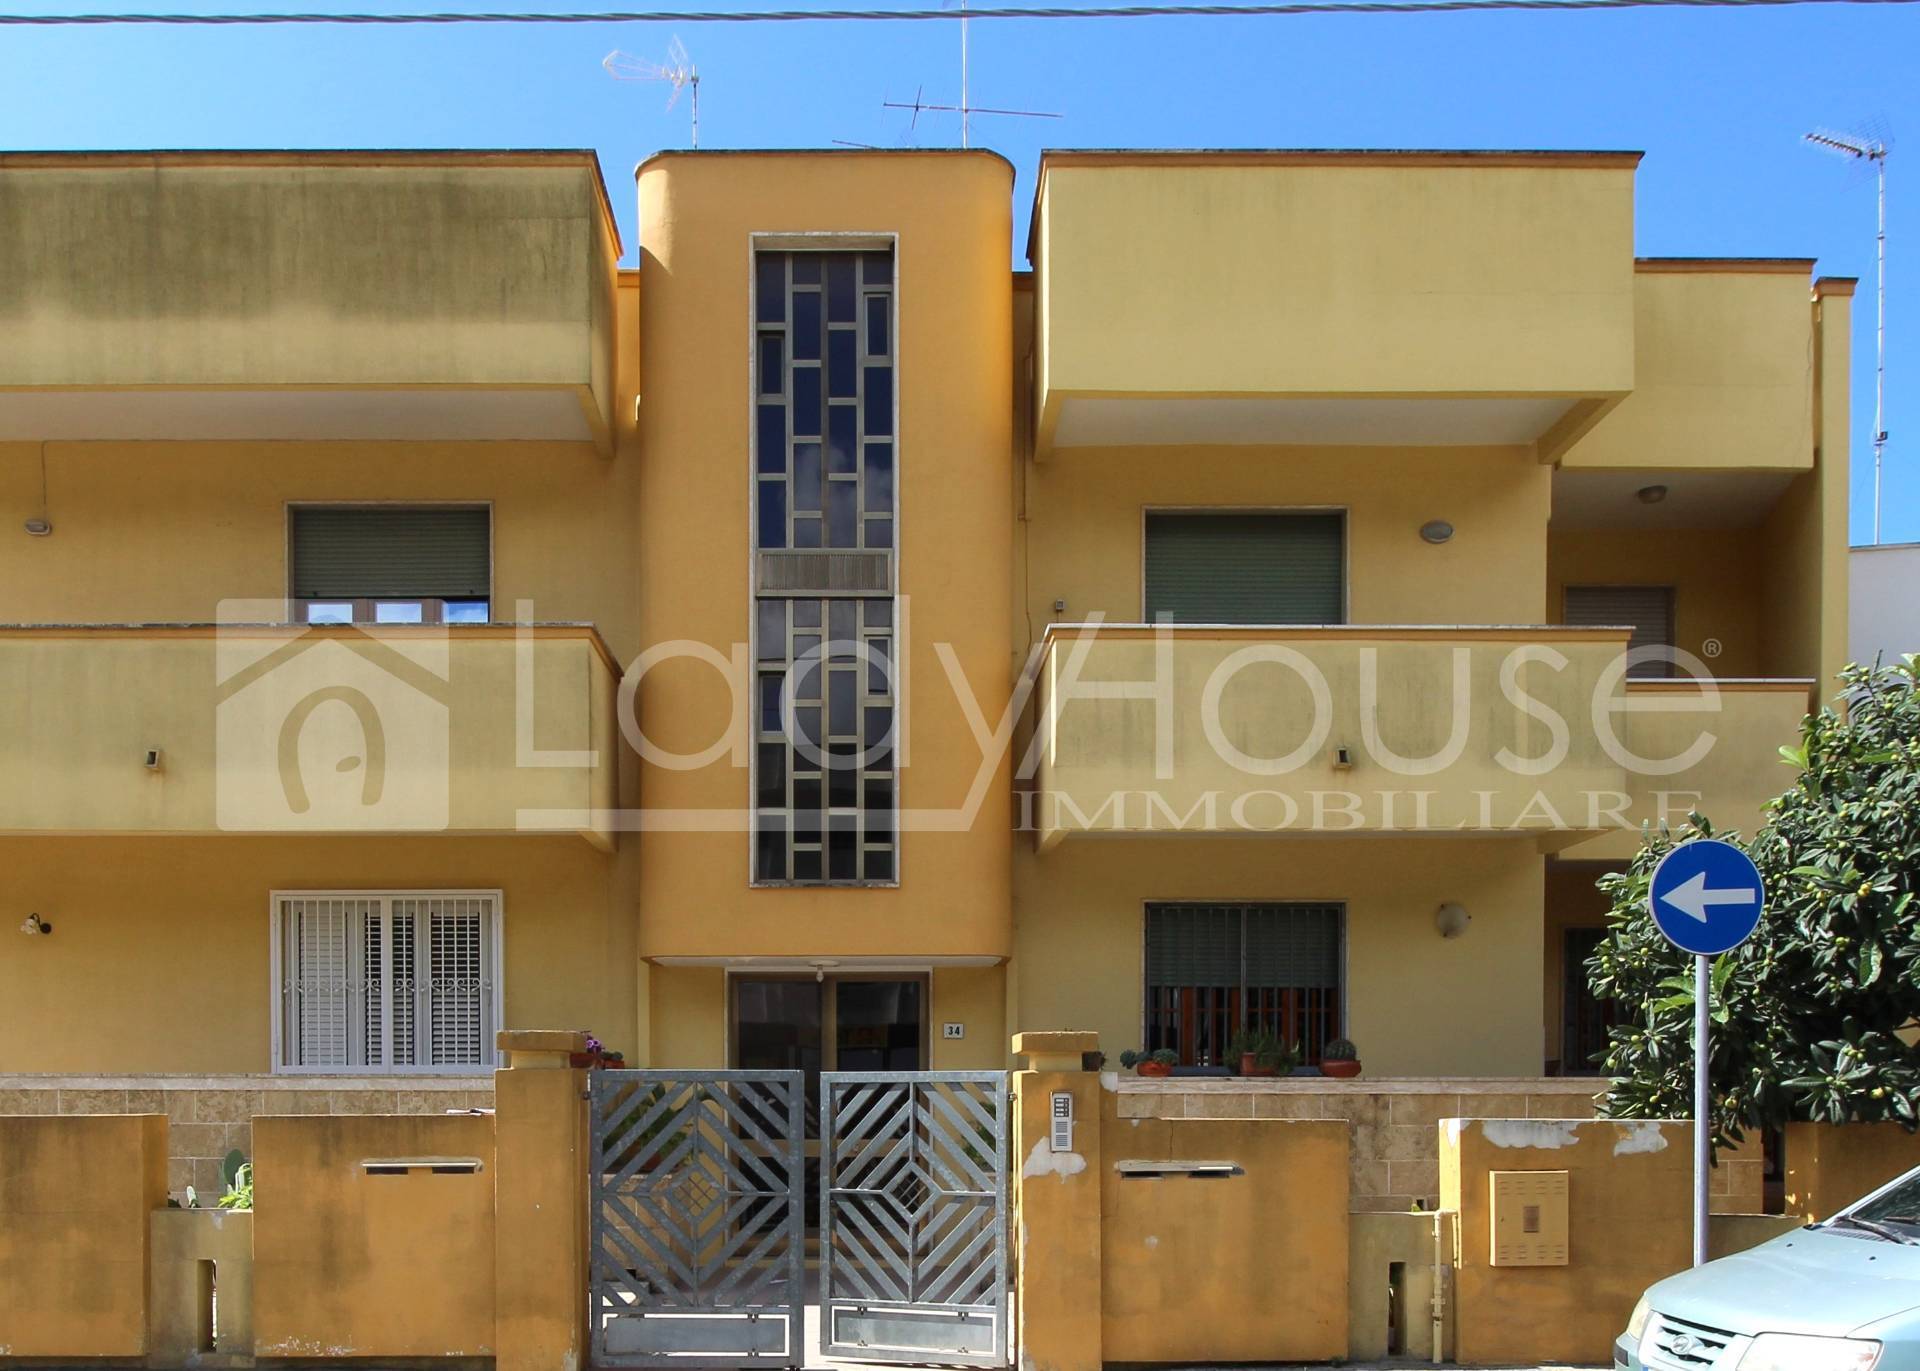 Appartamento in vendita a Sannicola, 5 locali, prezzo € 109.000 | PortaleAgenzieImmobiliari.it